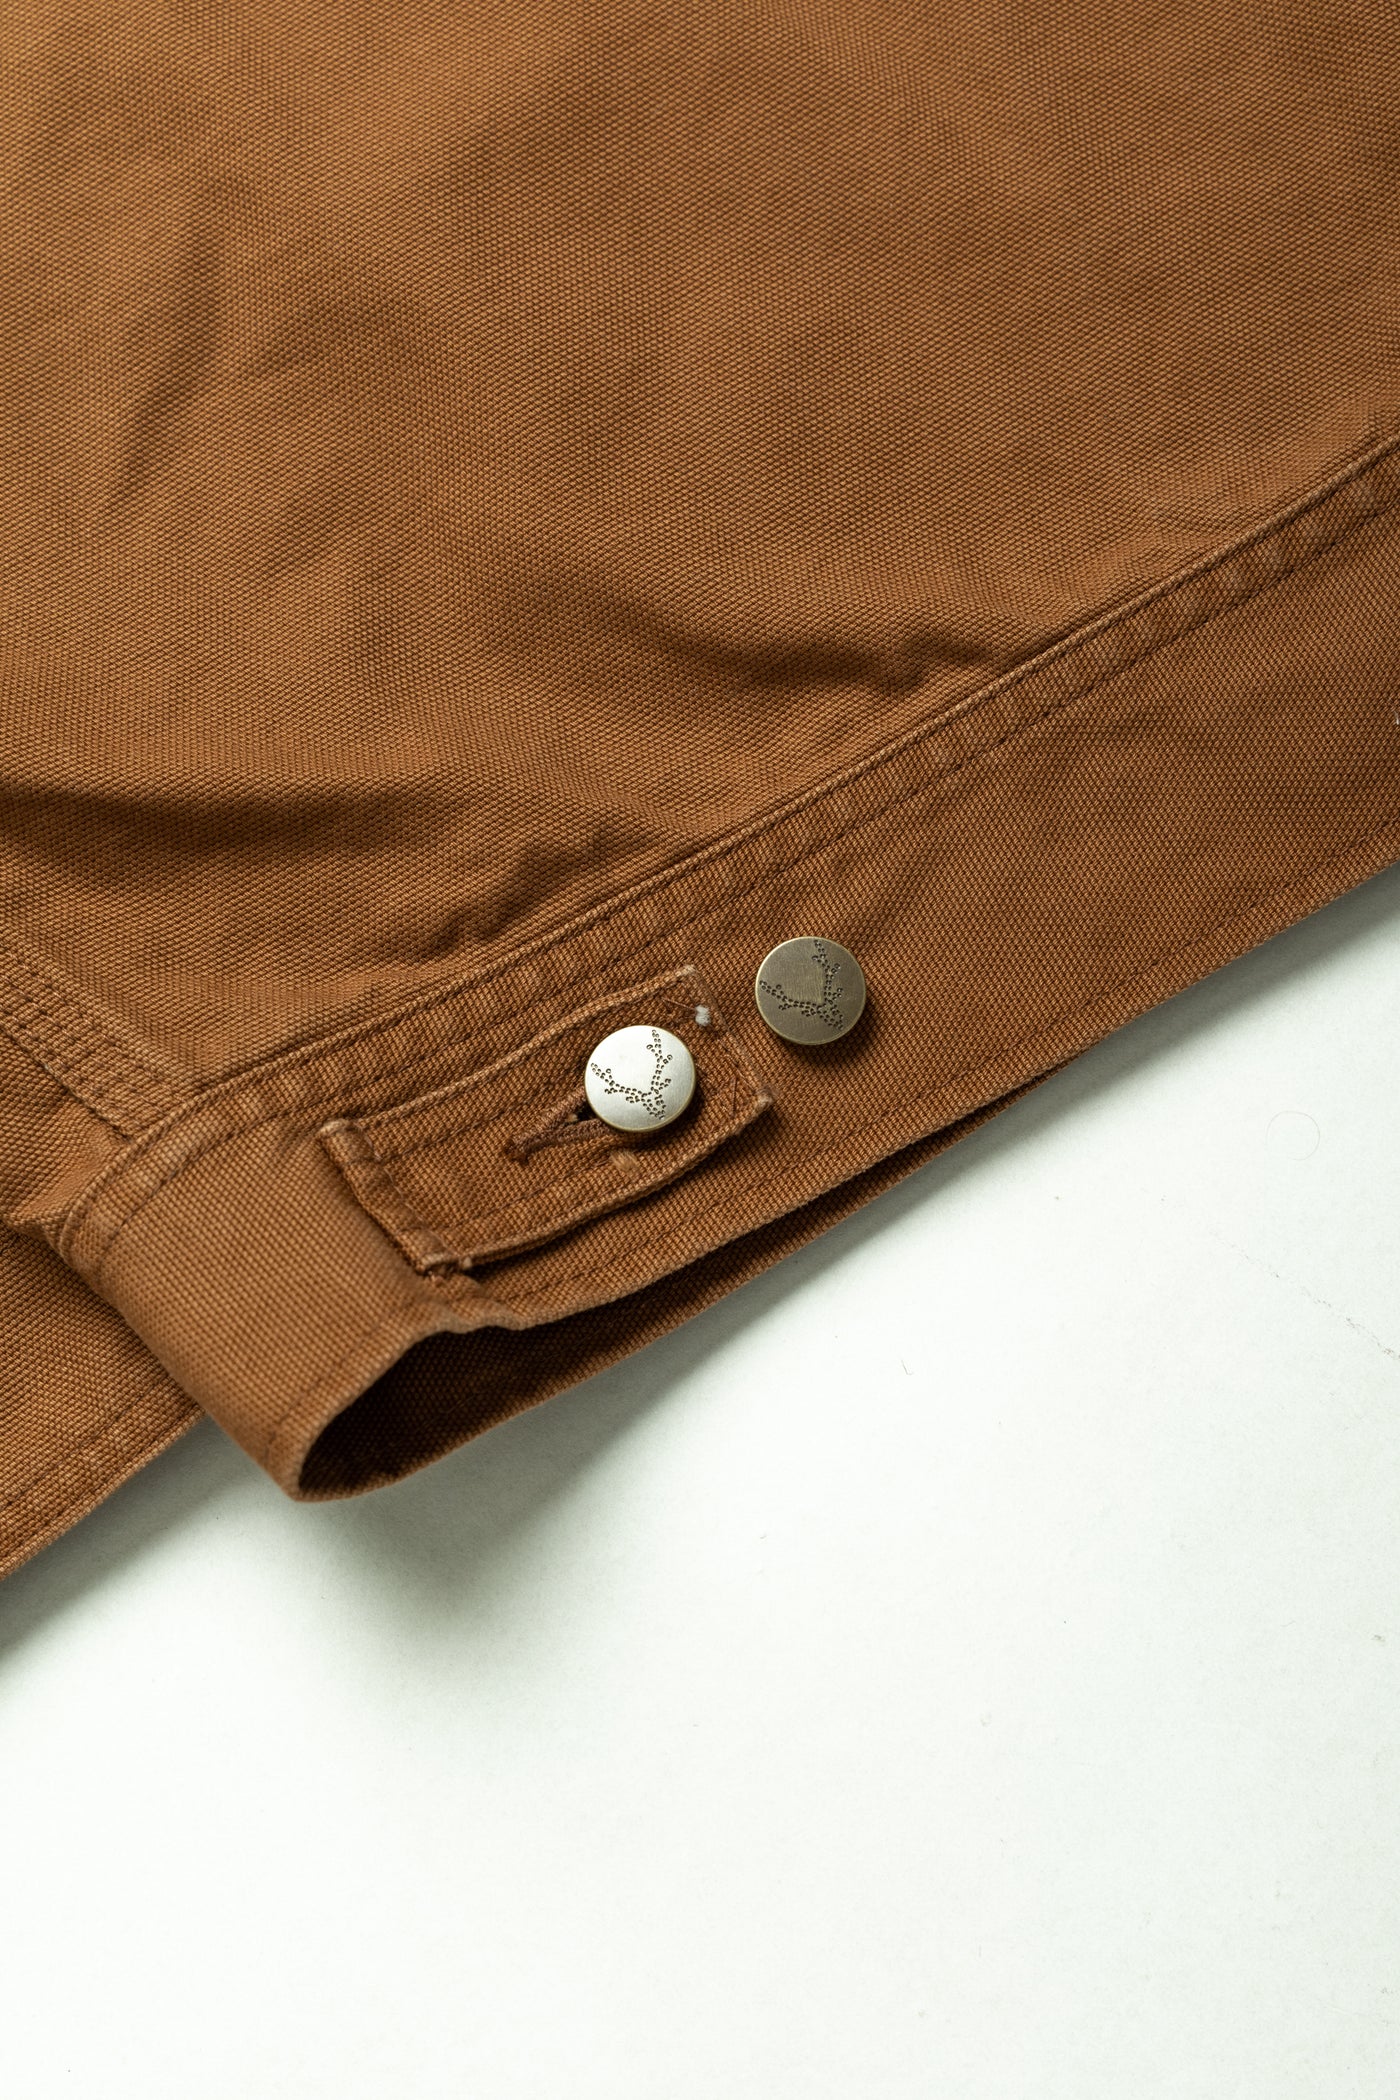 Work Jacket 11.5oz Cotton Canvas - Brown